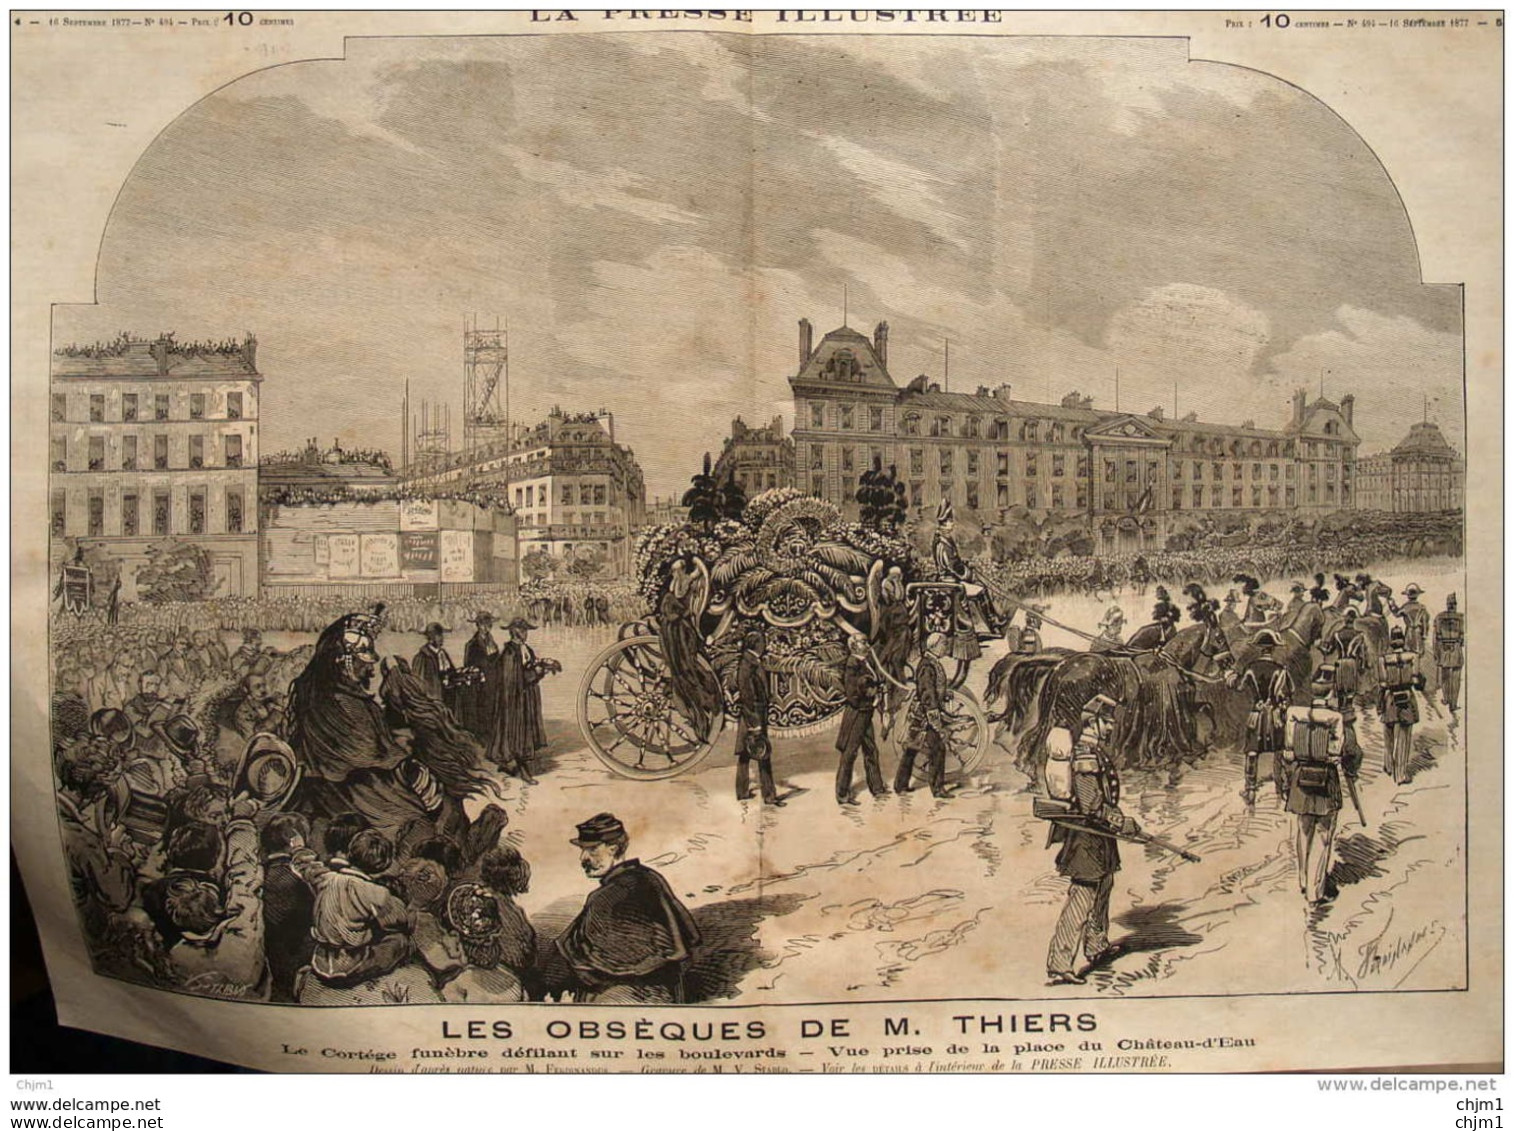 Les Obsèques De M. Thiers -  Le Cortège Funèbre Défilant Sur Les Boulevards - Page Double Original 1877 - Historical Documents